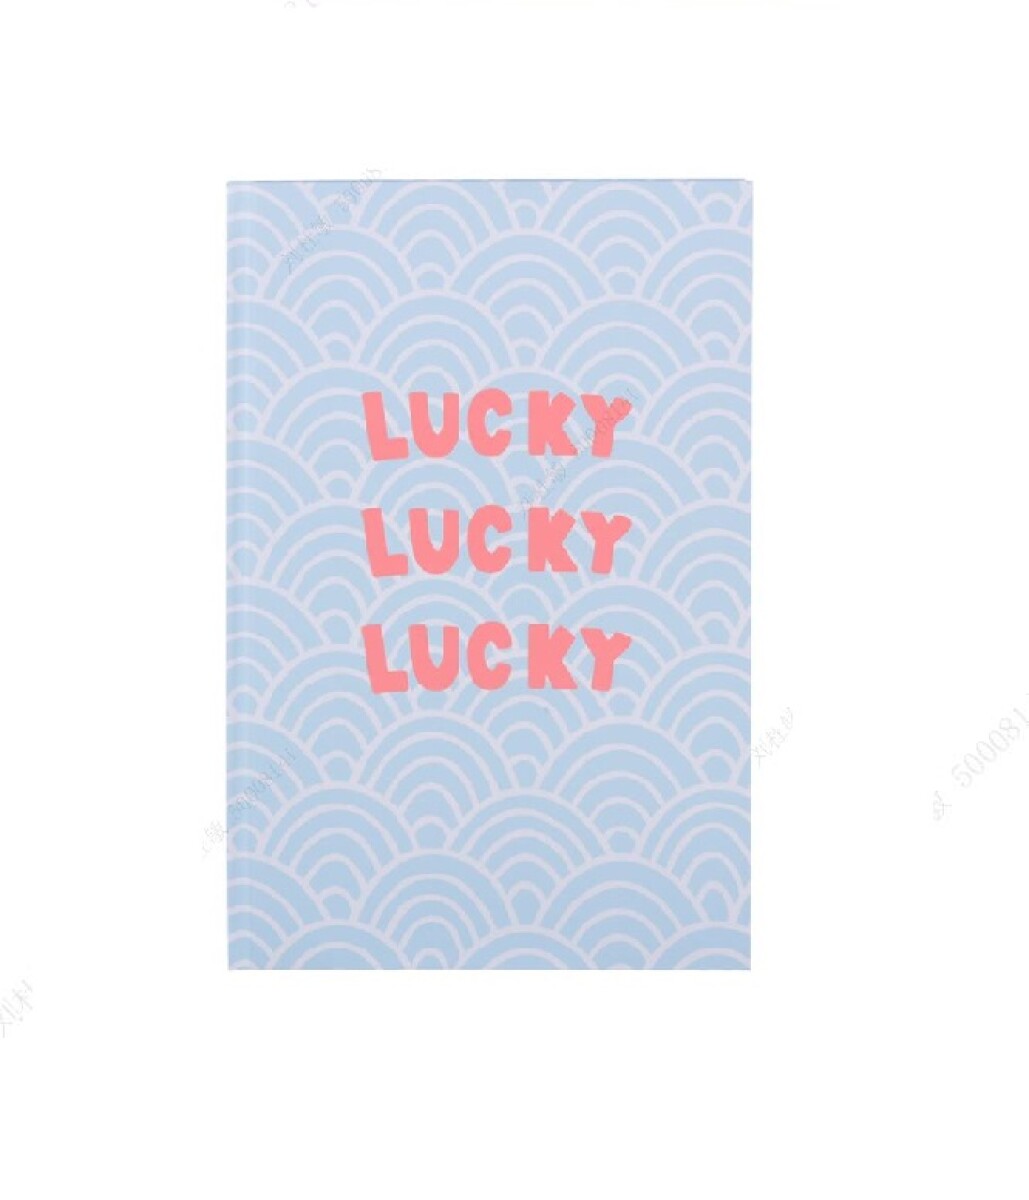 Cuaderno lucky A5 